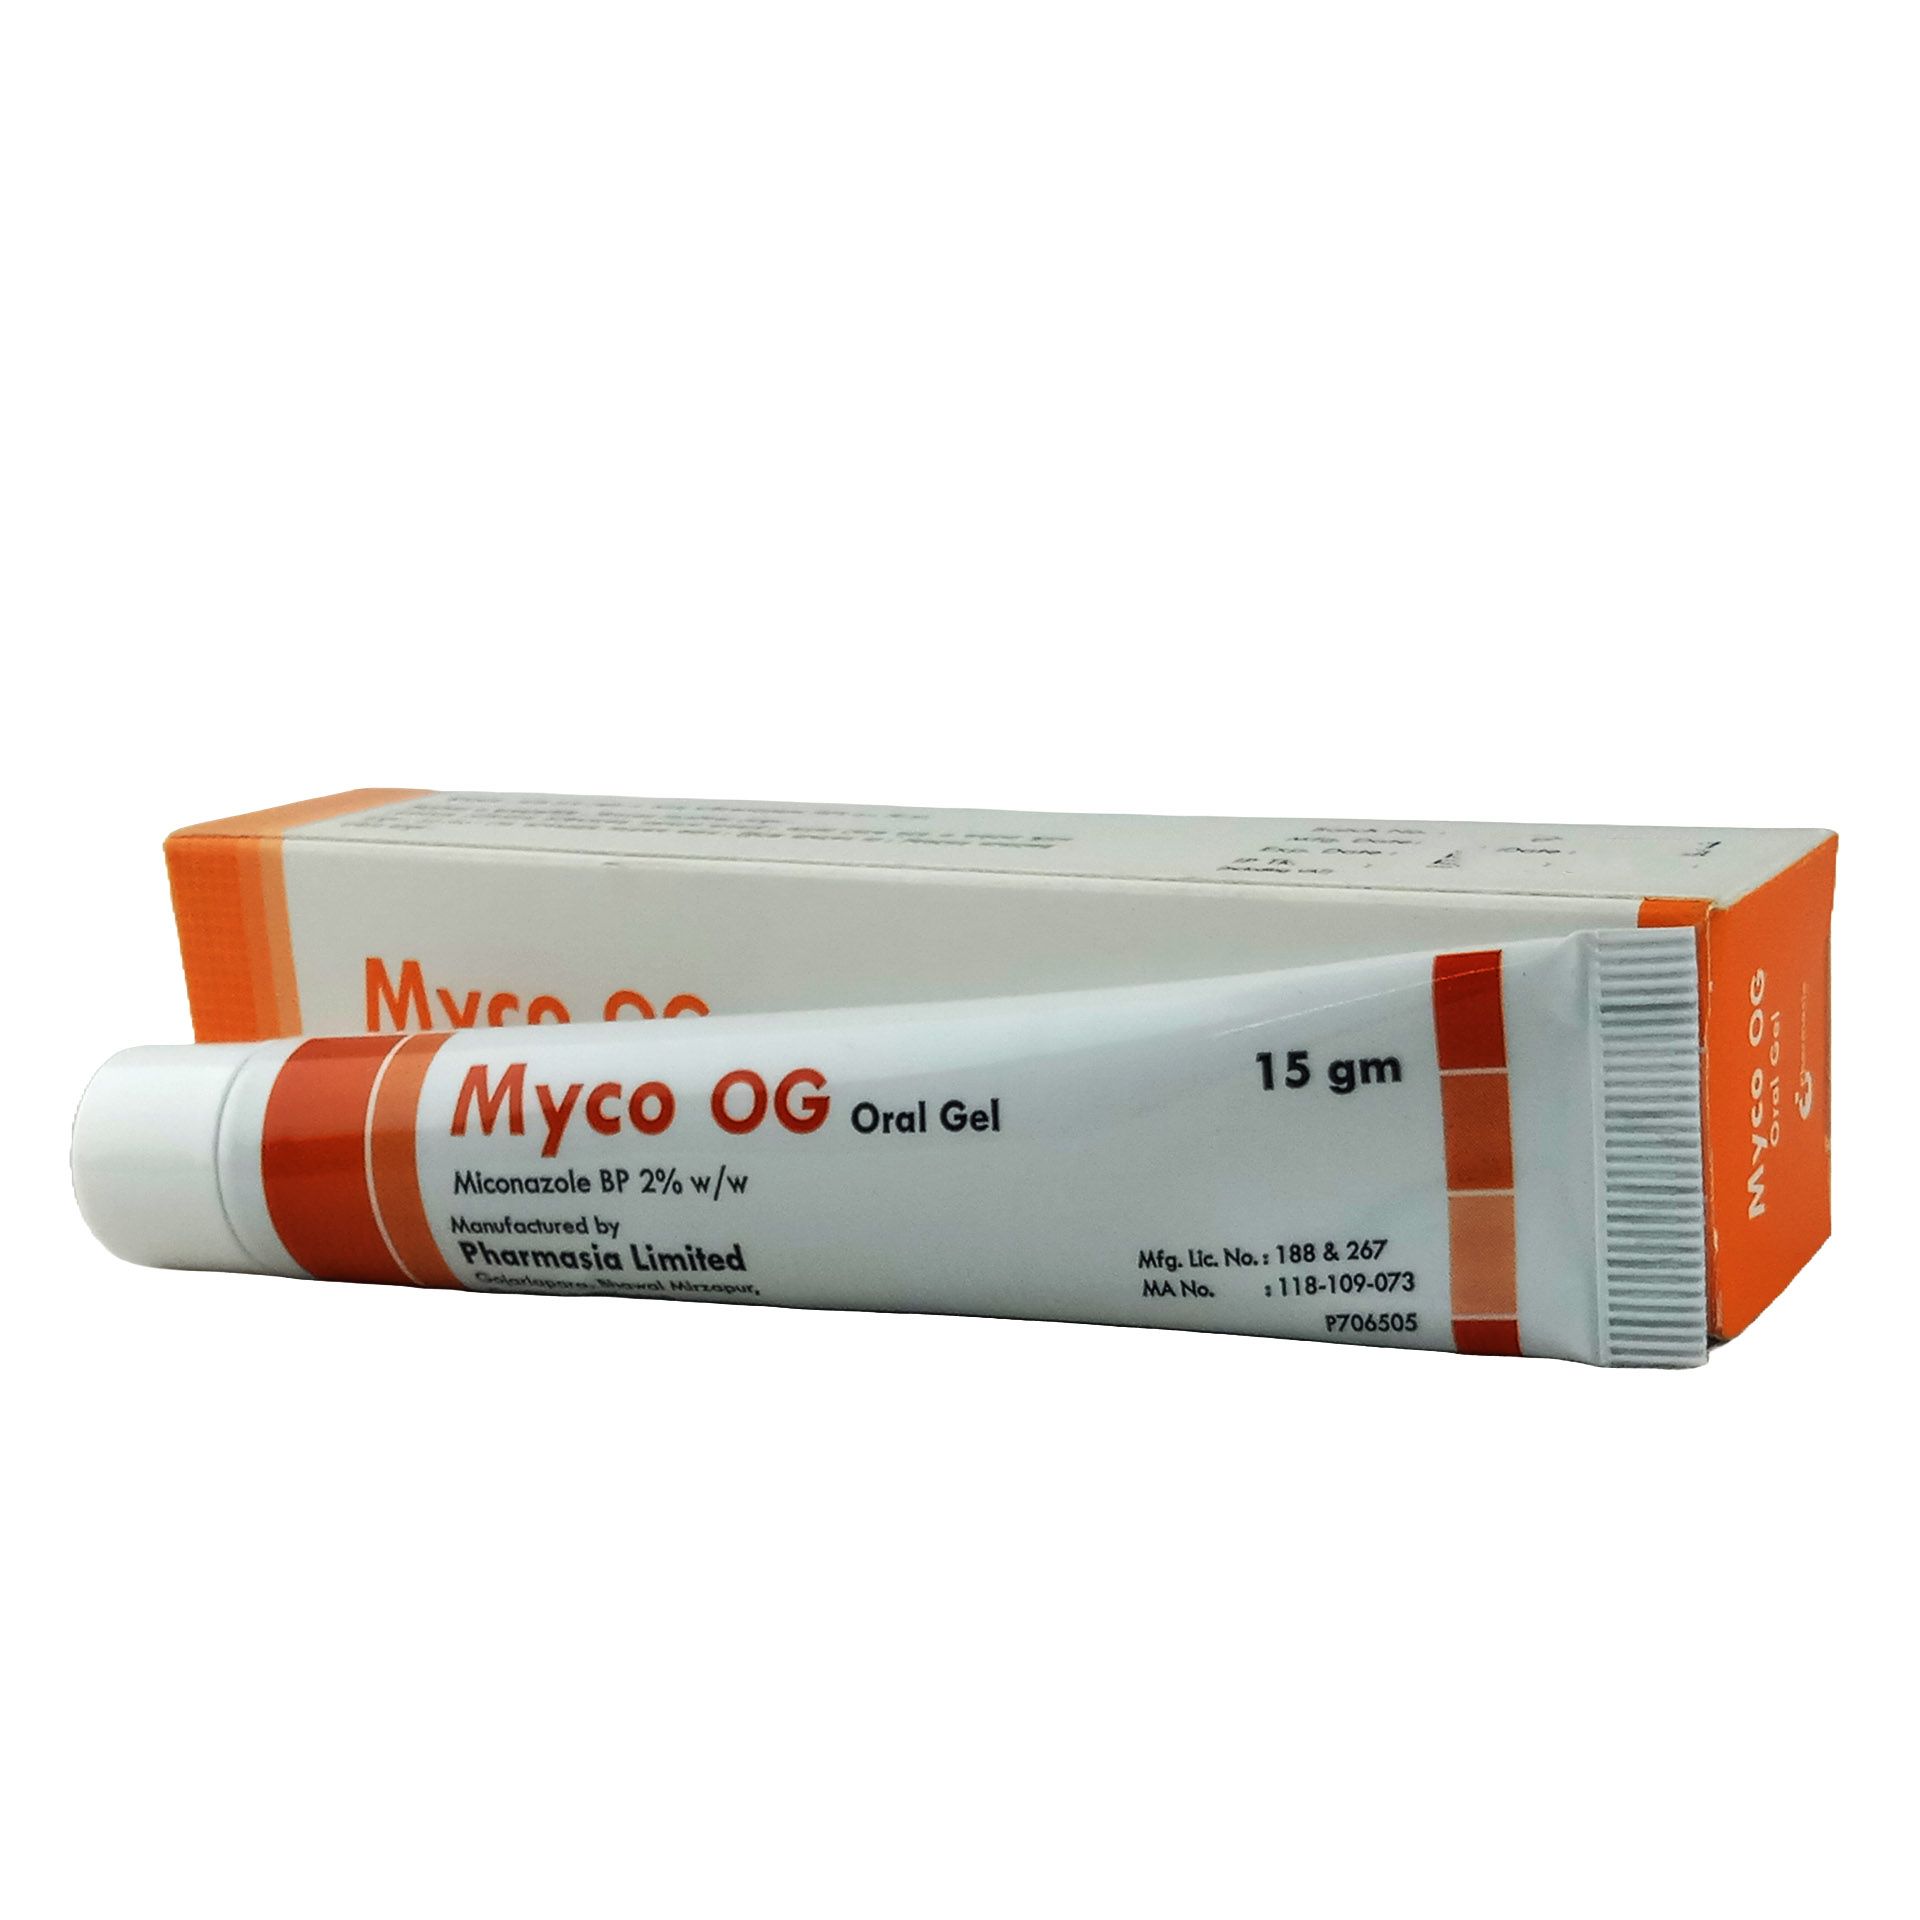 Myco-OG 2% Oral Gel